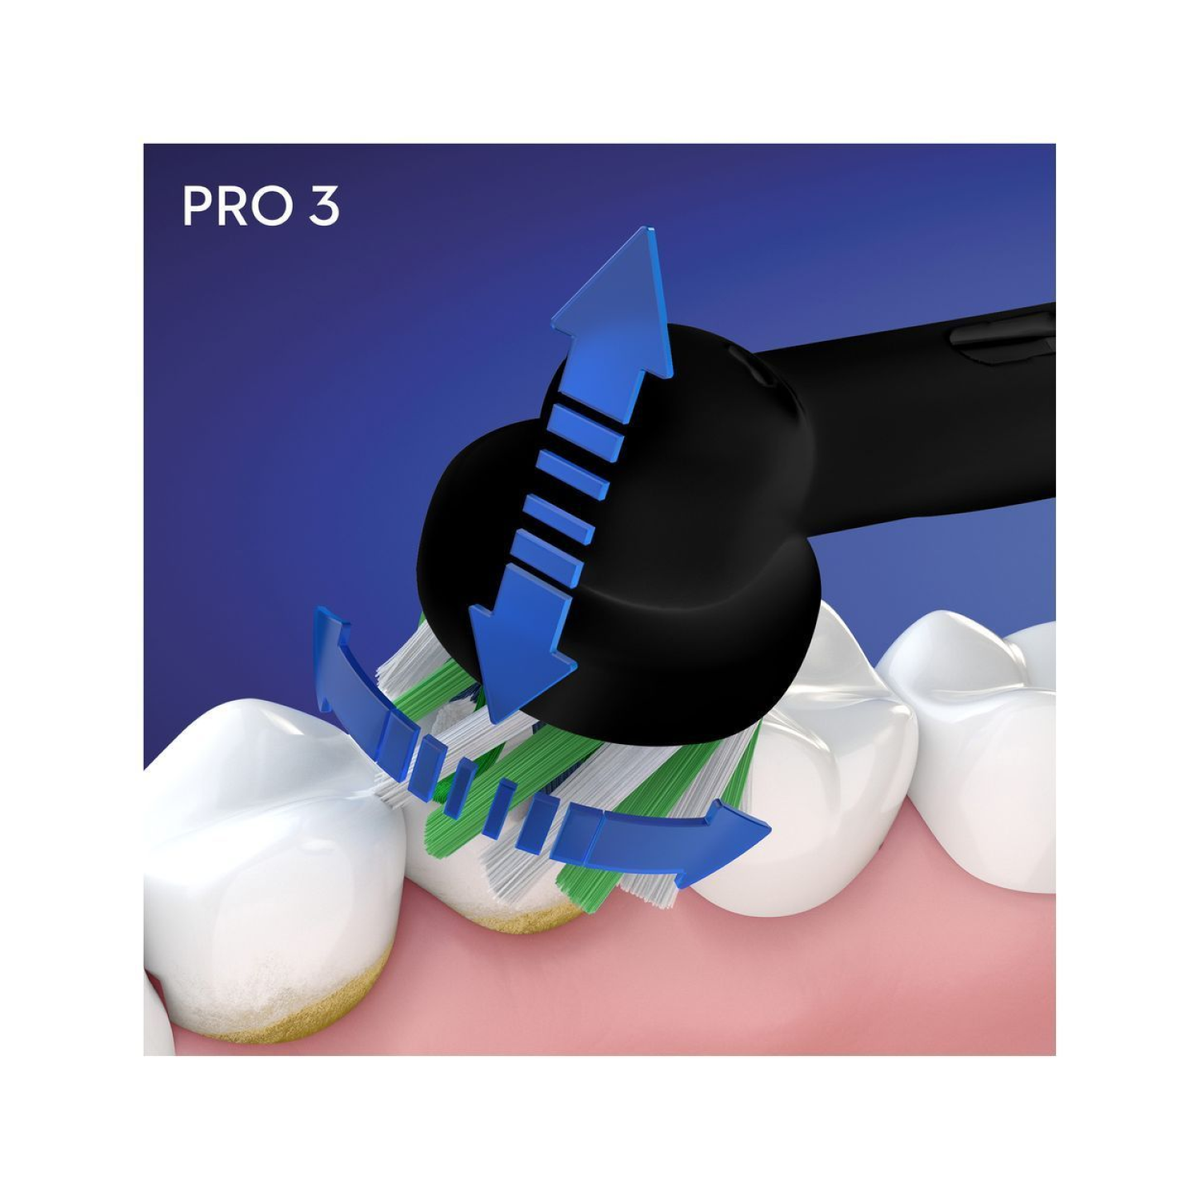 ORAL-B Pro 3 3500 Elektrische schwarz Zahnbürste